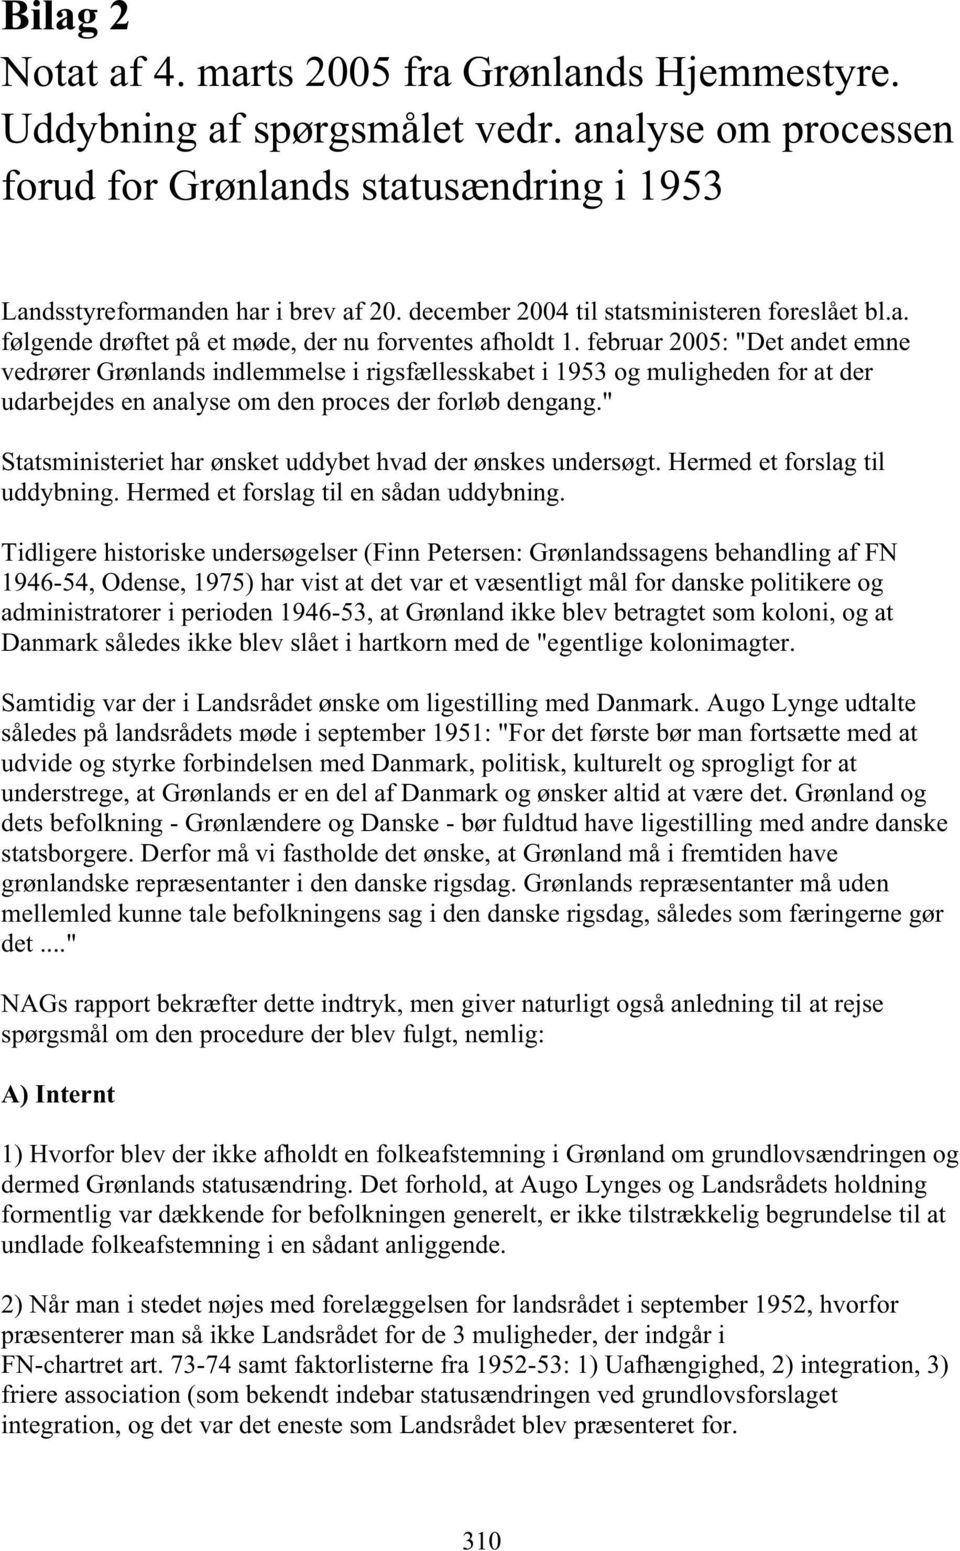 februar 2005: "Det andet emne vedrører Grønlands indlemmelse i rigsfællesskabet i 1953 og muligheden for at der udarbejdes en analyse om den proces der forløb dengang.